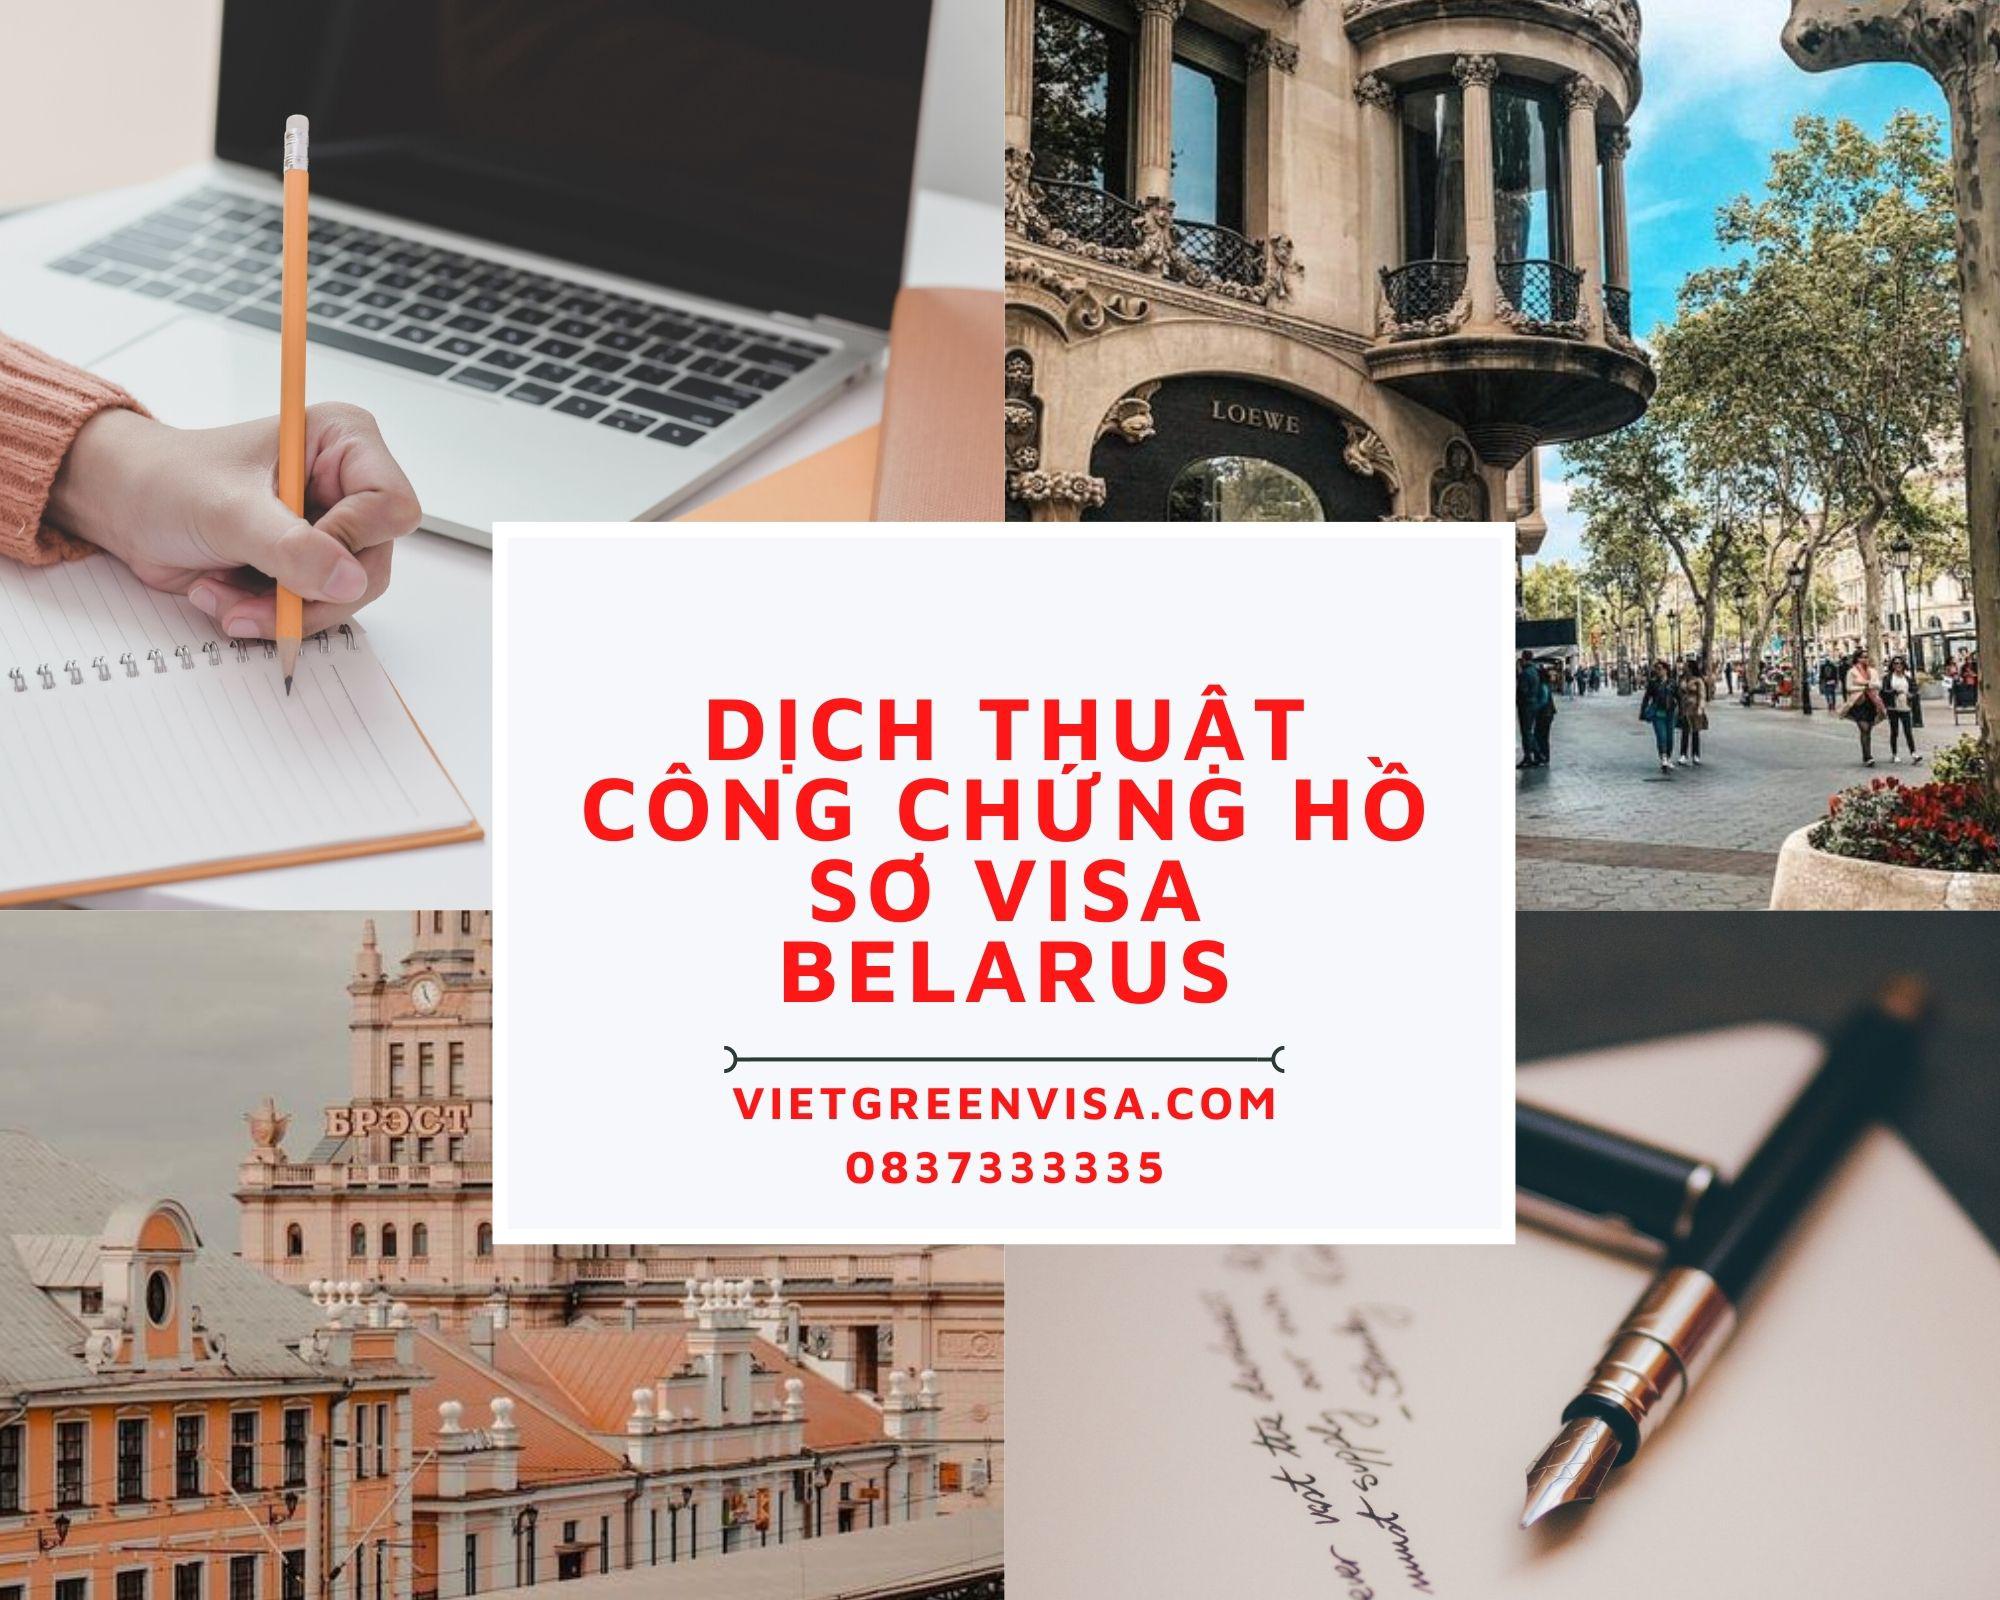 Dịch thuật công chứng hồ sơ visa du lịch Belarus nhanh rẻ